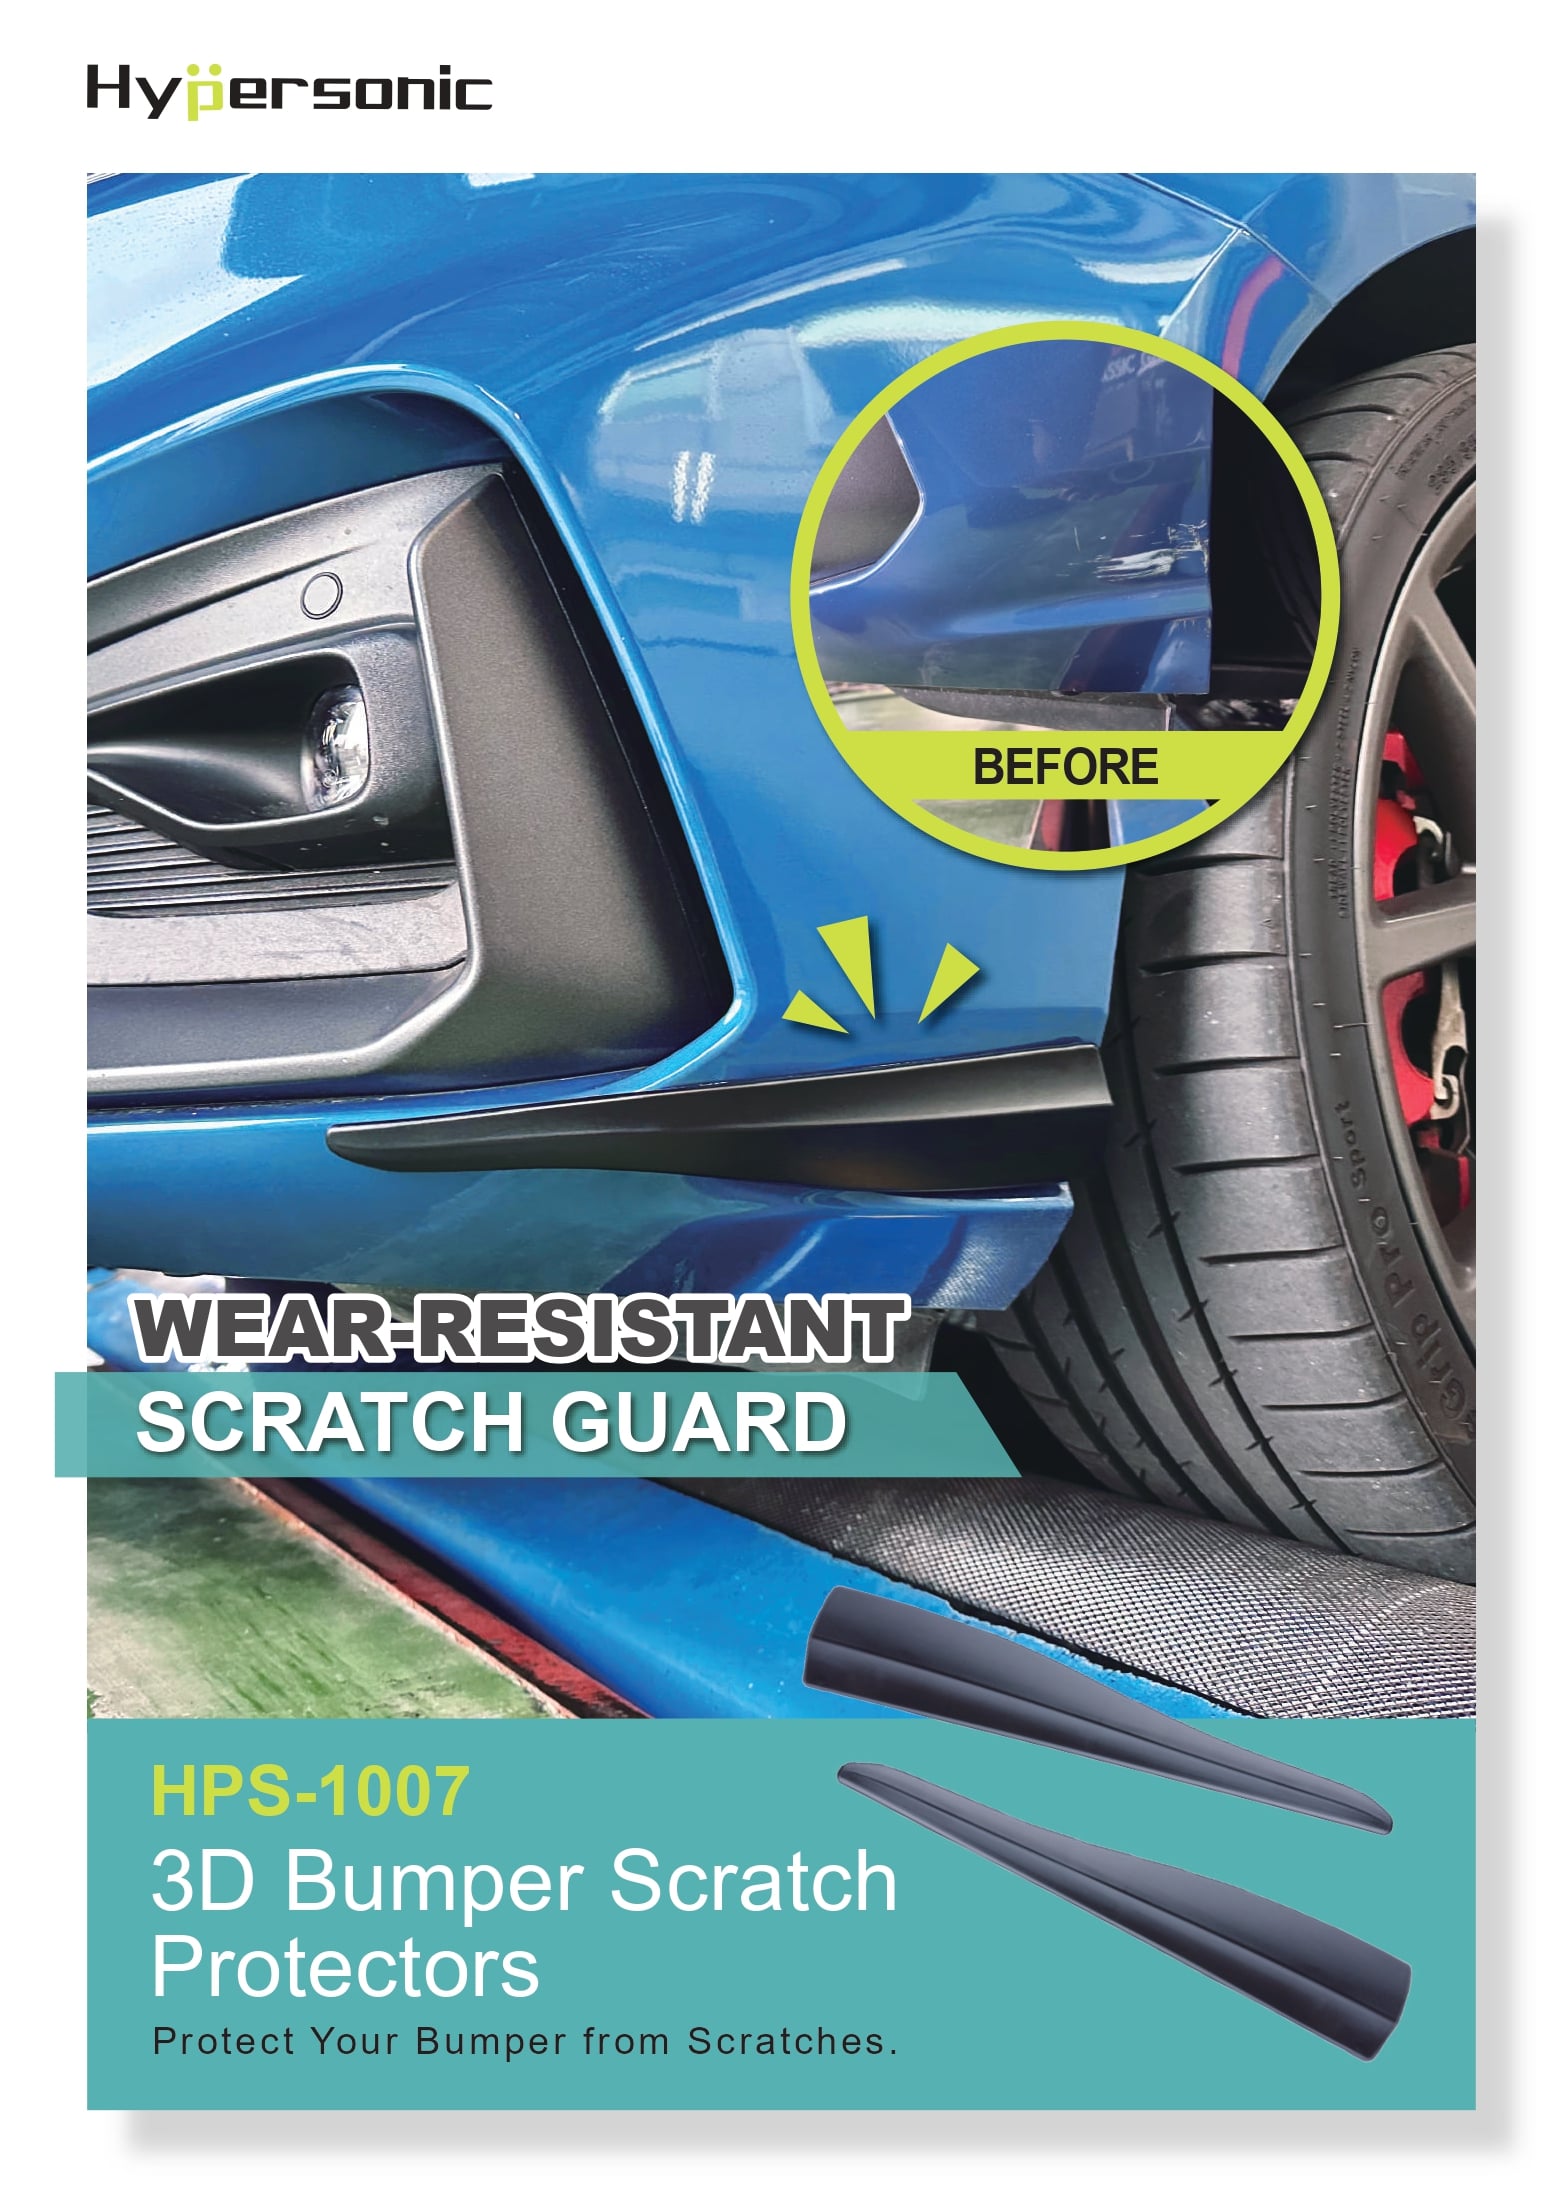 3D Bumper Scratch Protectors HPS-1007